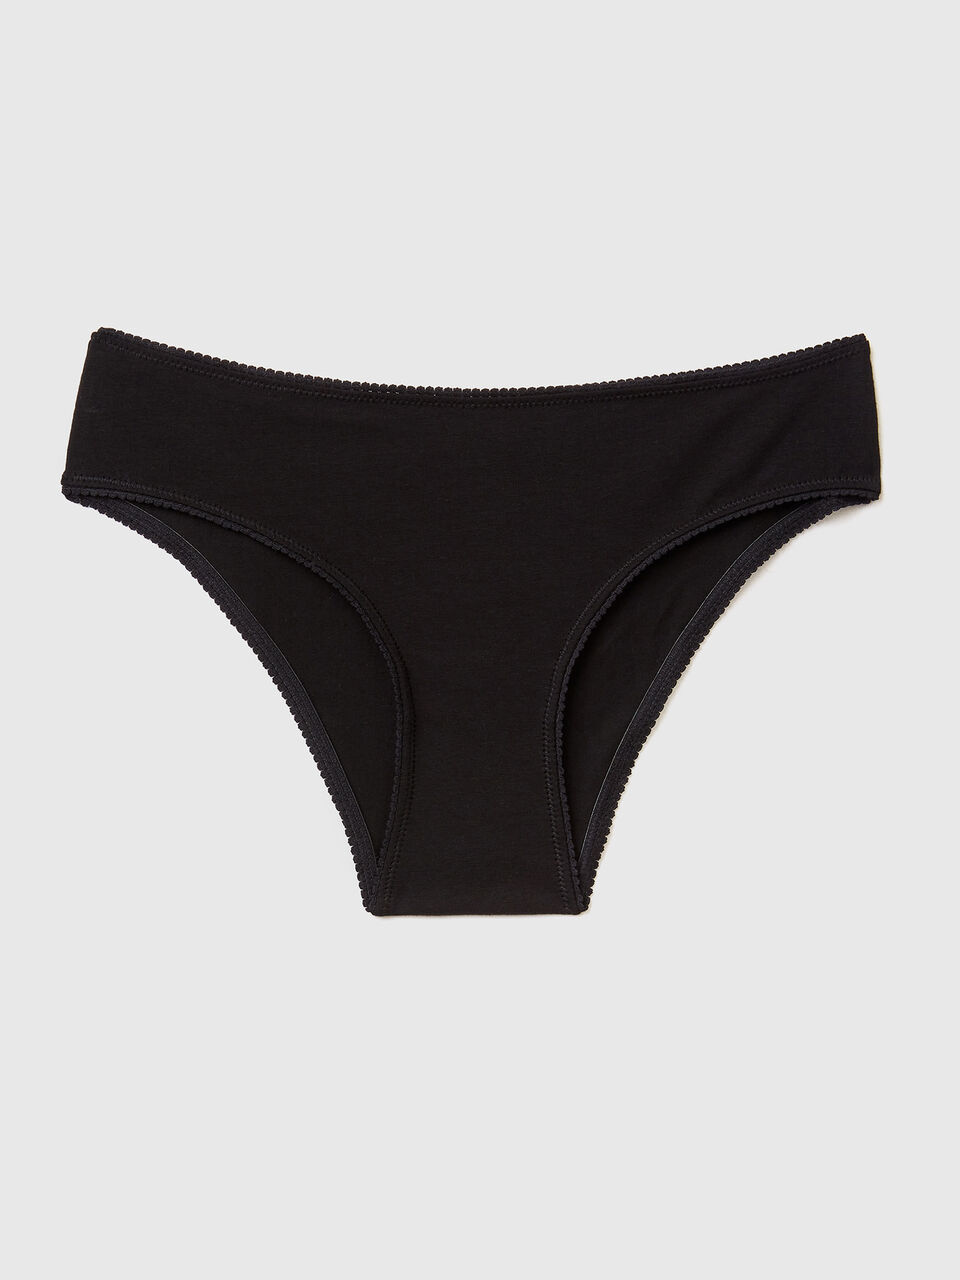 Black simple Panties